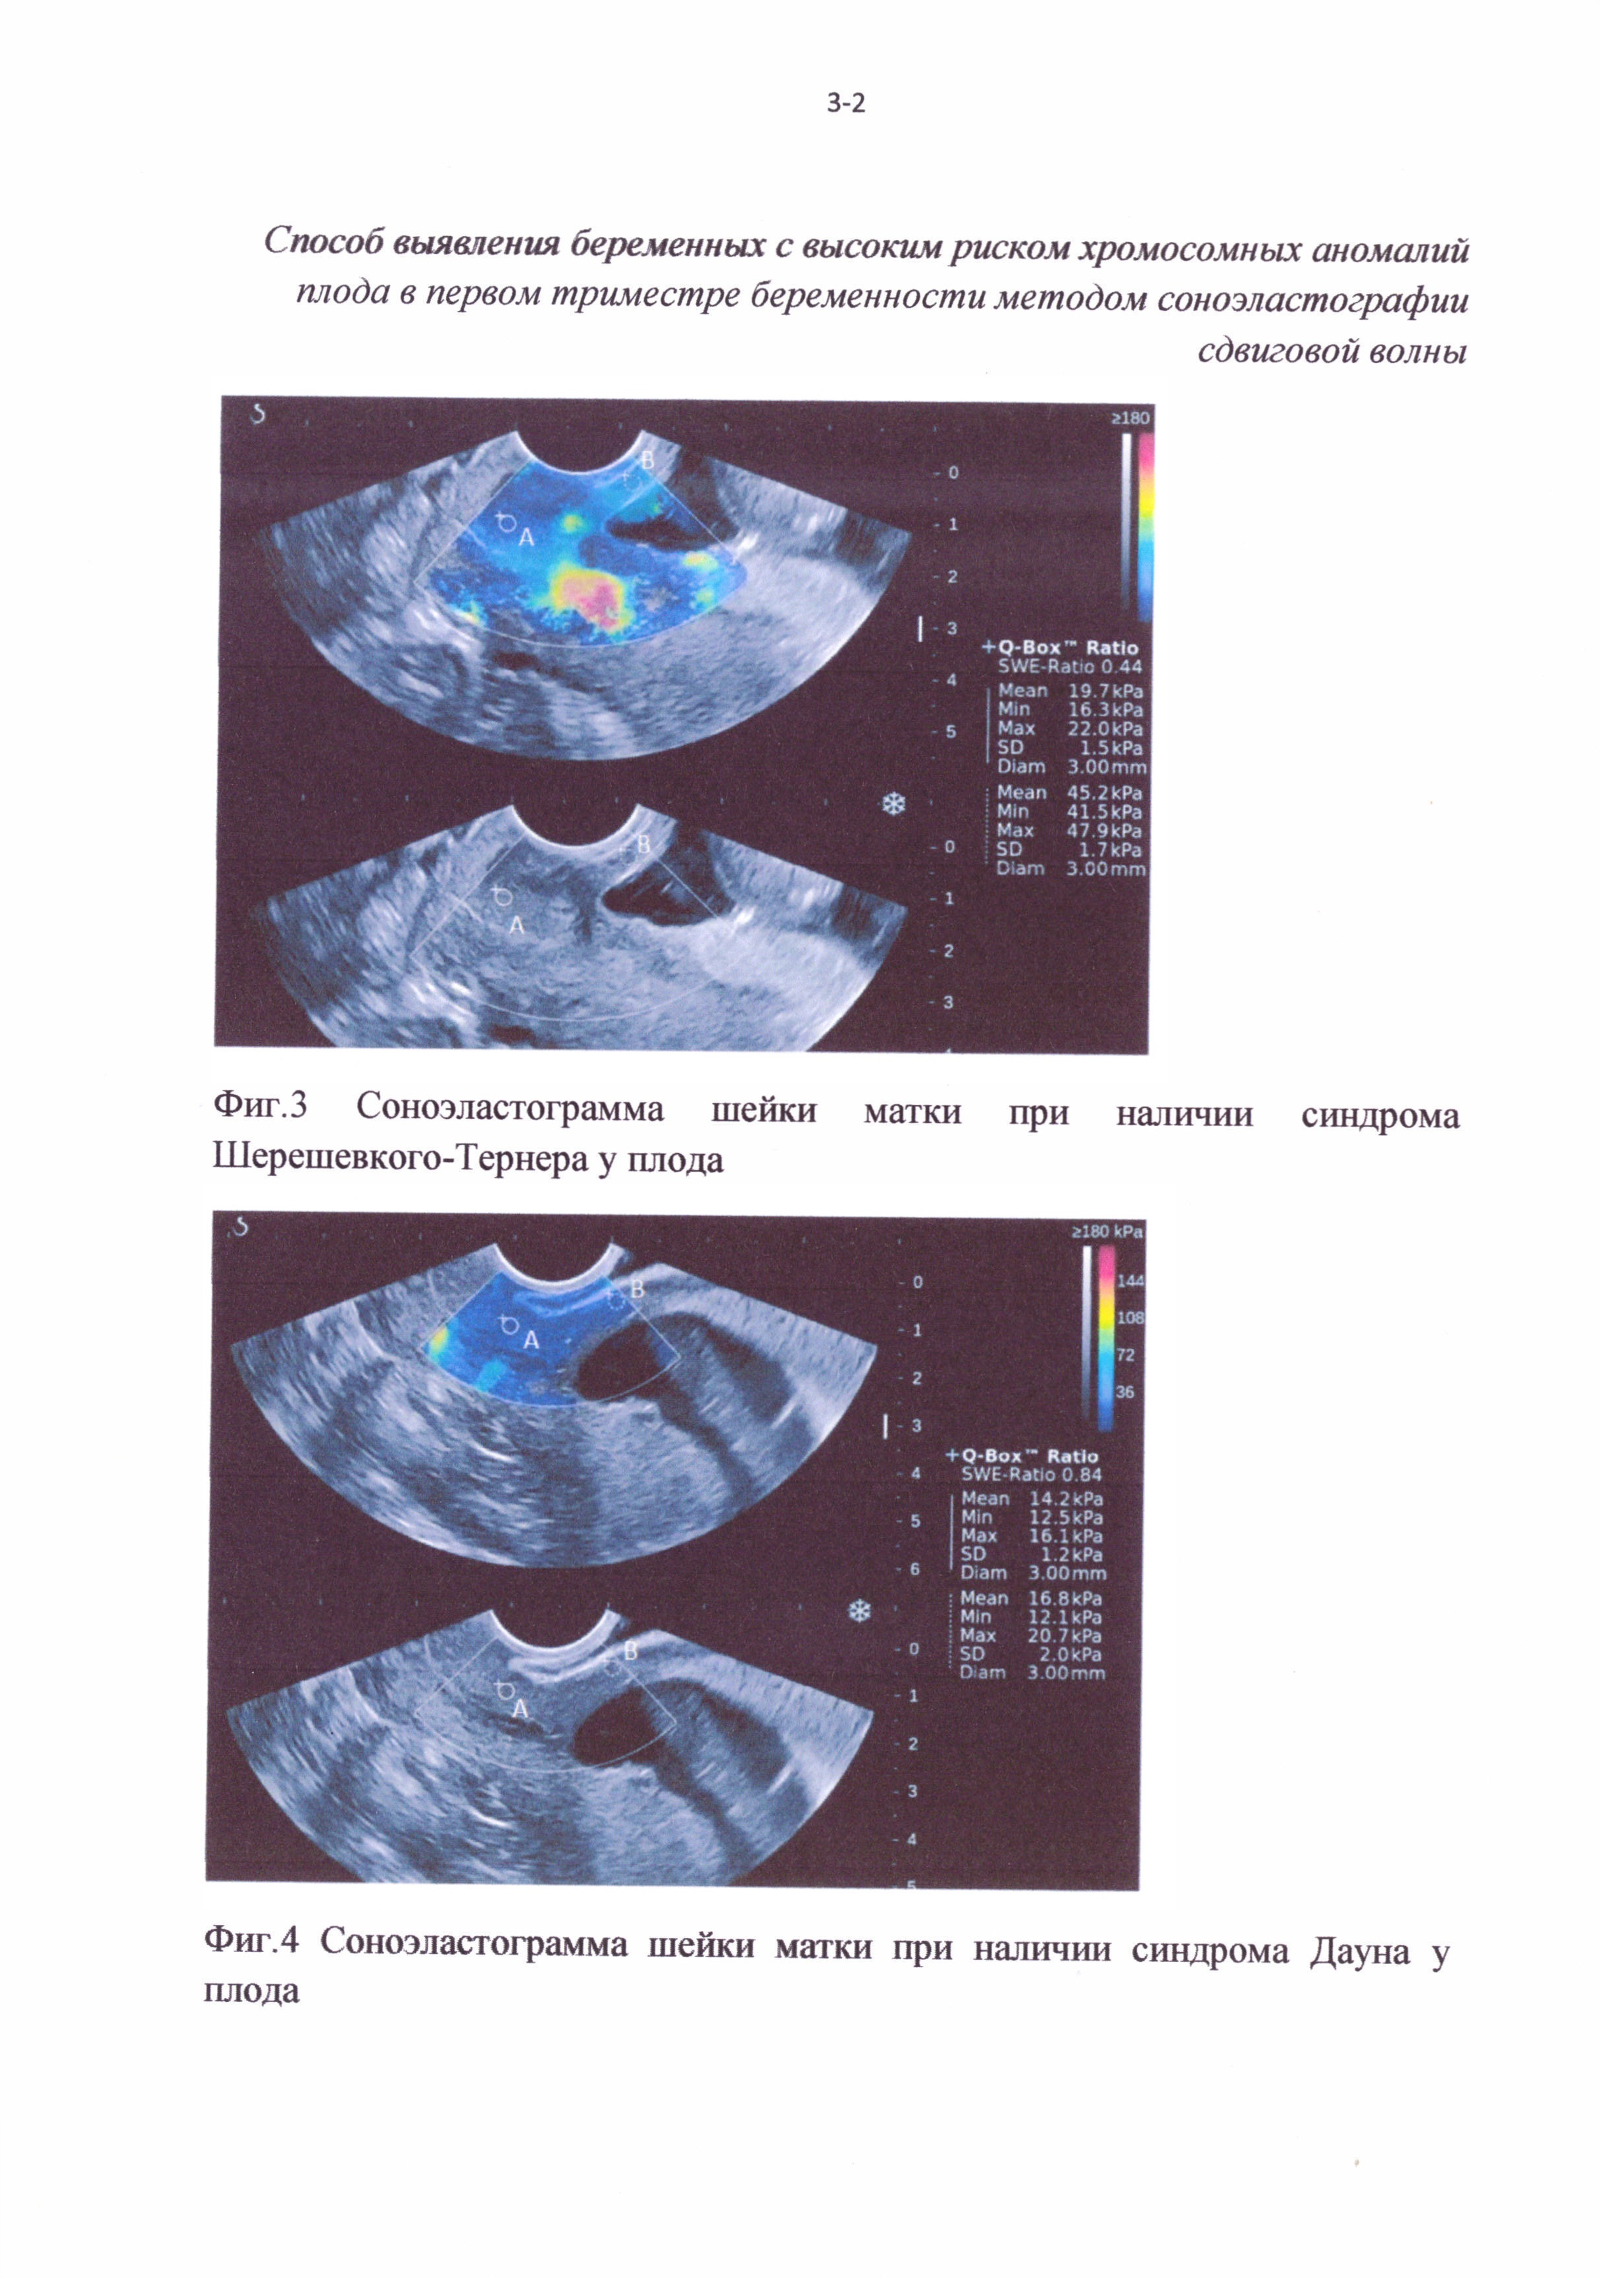 Способ отбора беременных женщин для проведения инвазивной диагностики хромосомных аномалий плода в первом триместре беременности методом соноэластографии сдвиговой волны